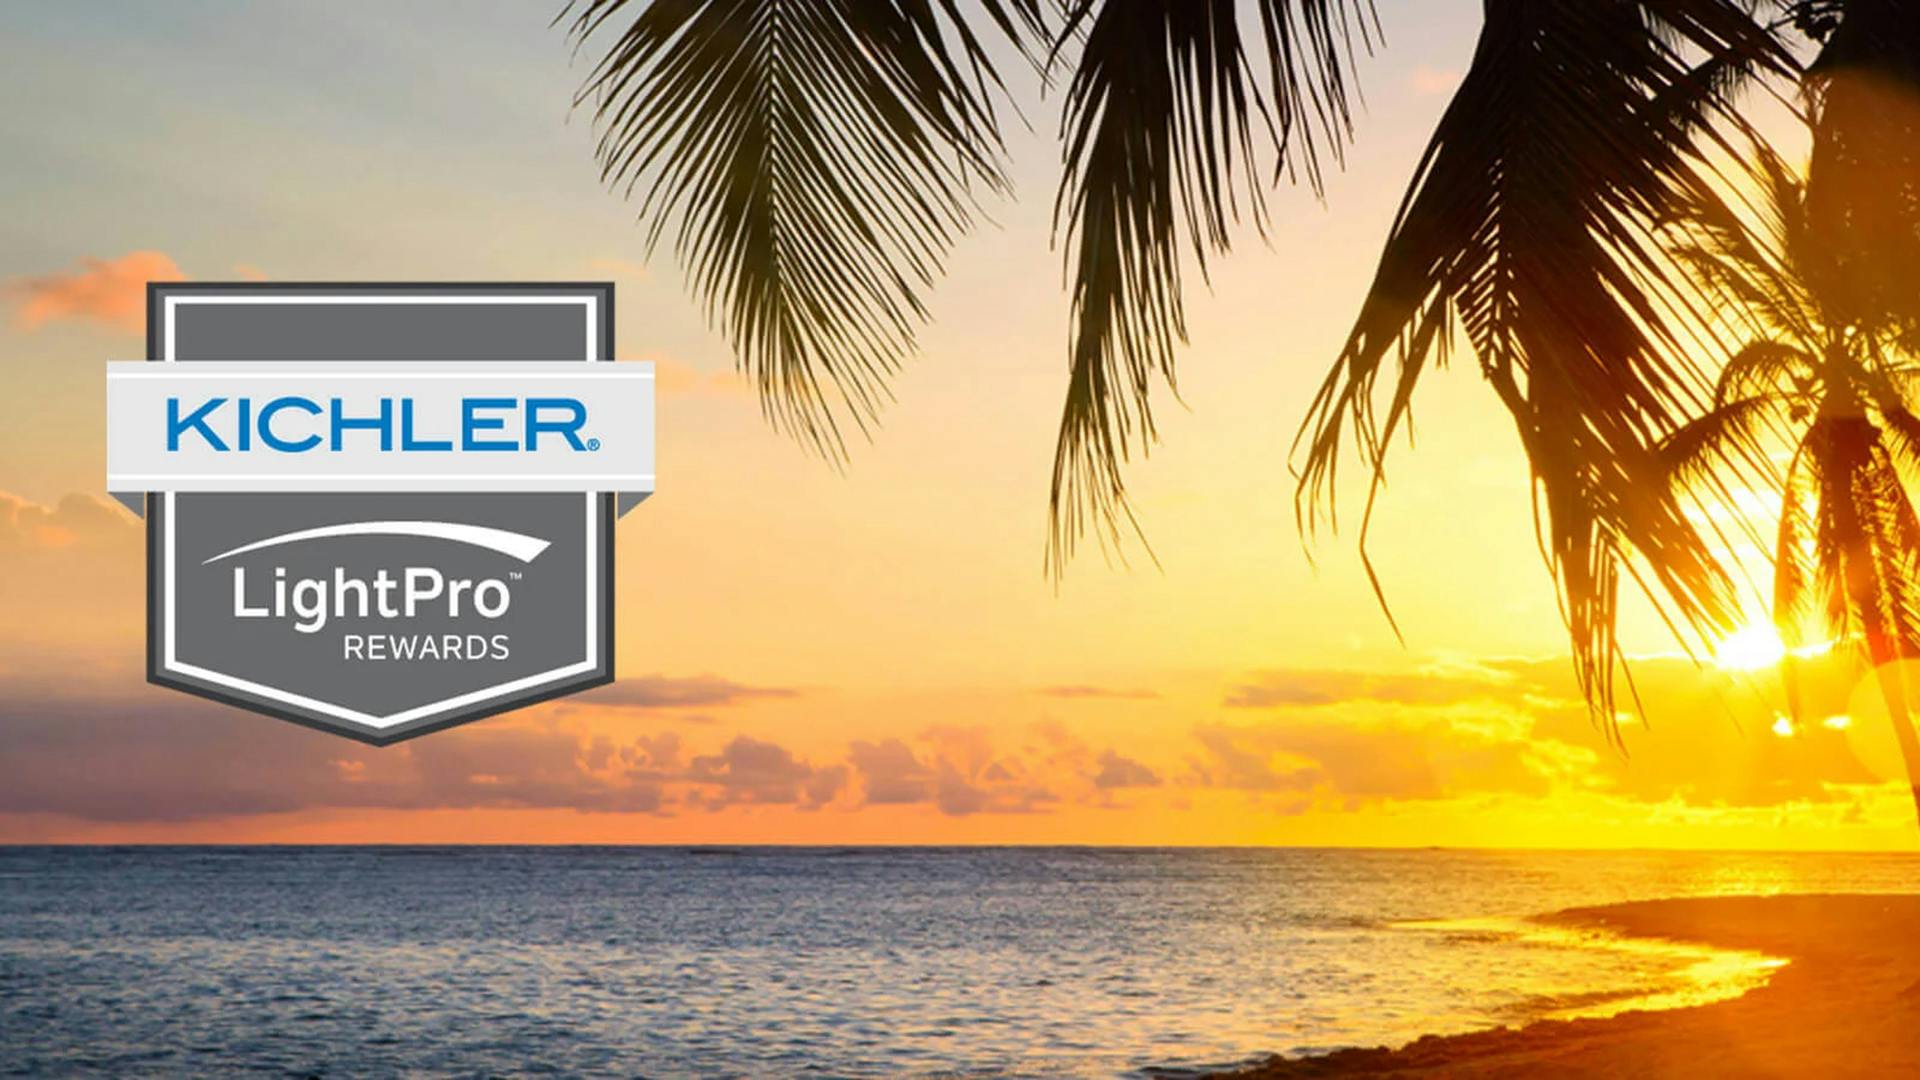 Beach sunset with Kichler LightProw Rewards logo